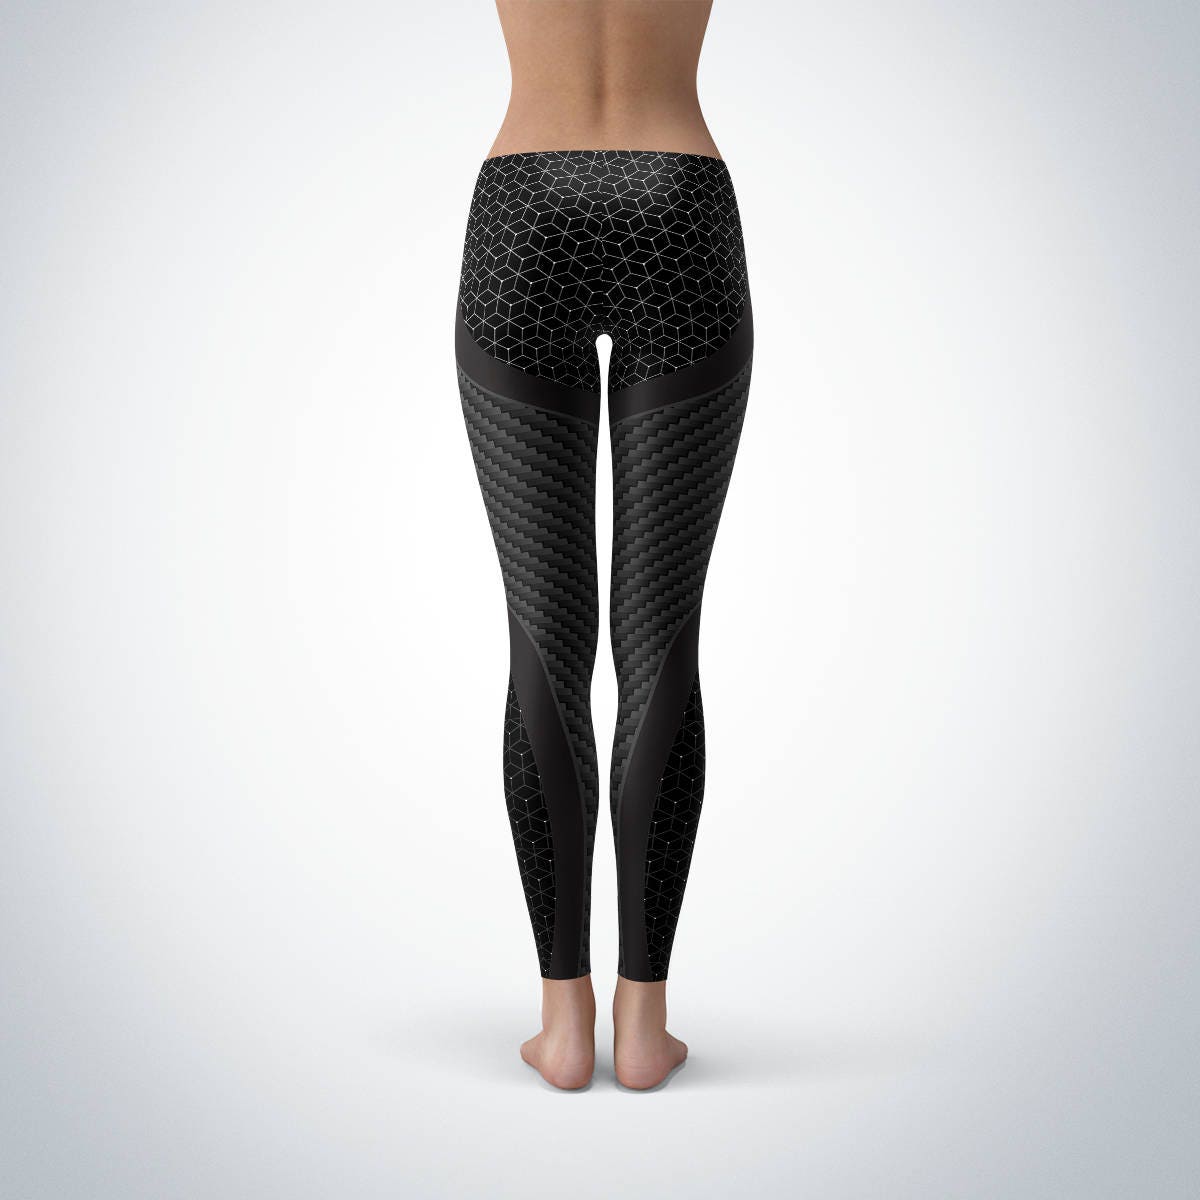 Carbon Fiber Black Yoga Leggings Black Print Pattern | Etsy